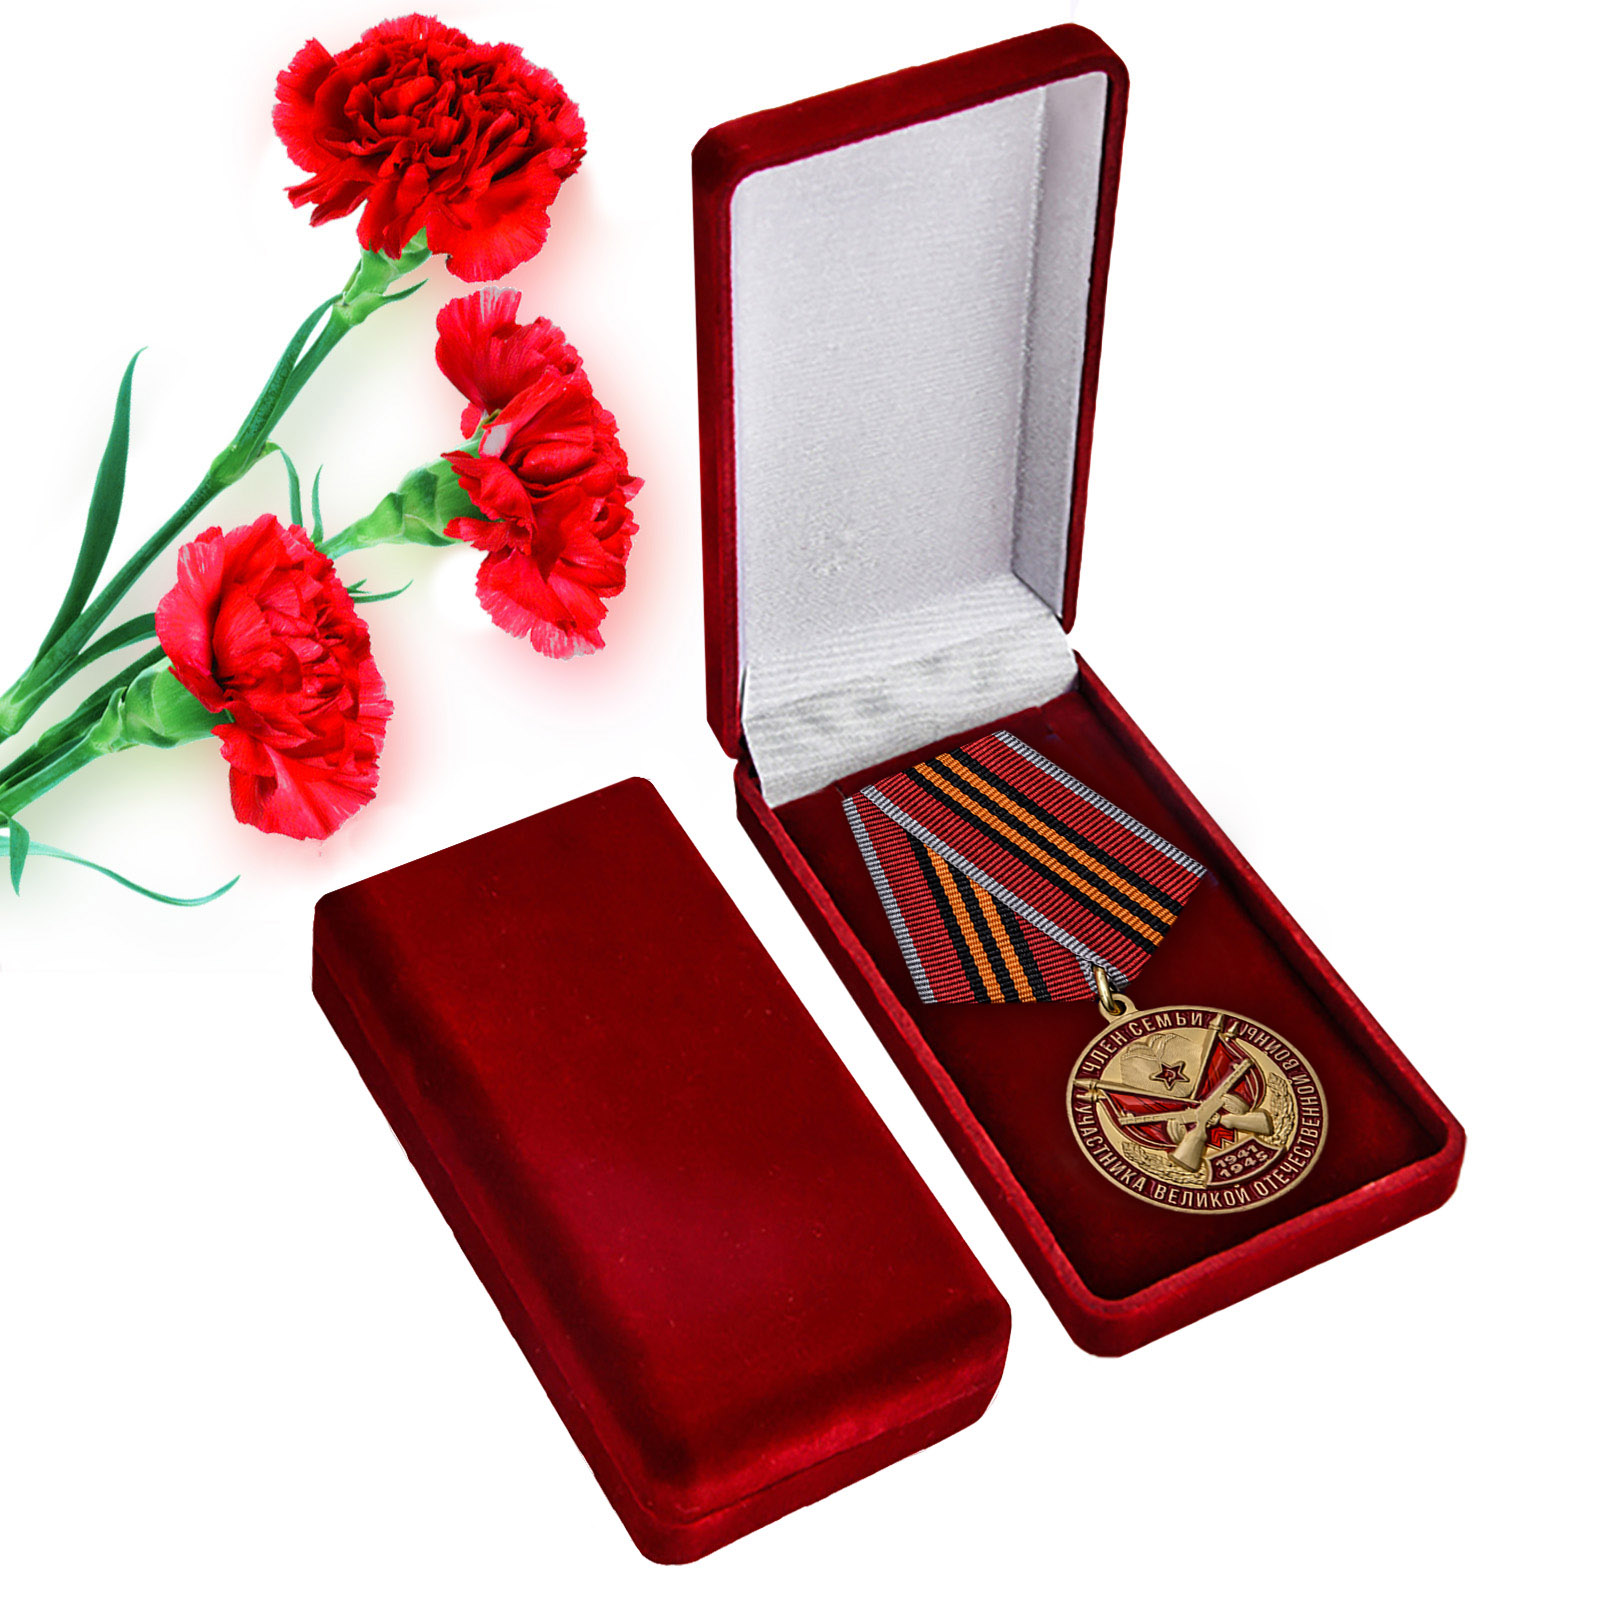 Купить памятную медаль Член семьи участника ВОВ оптом или в розницу